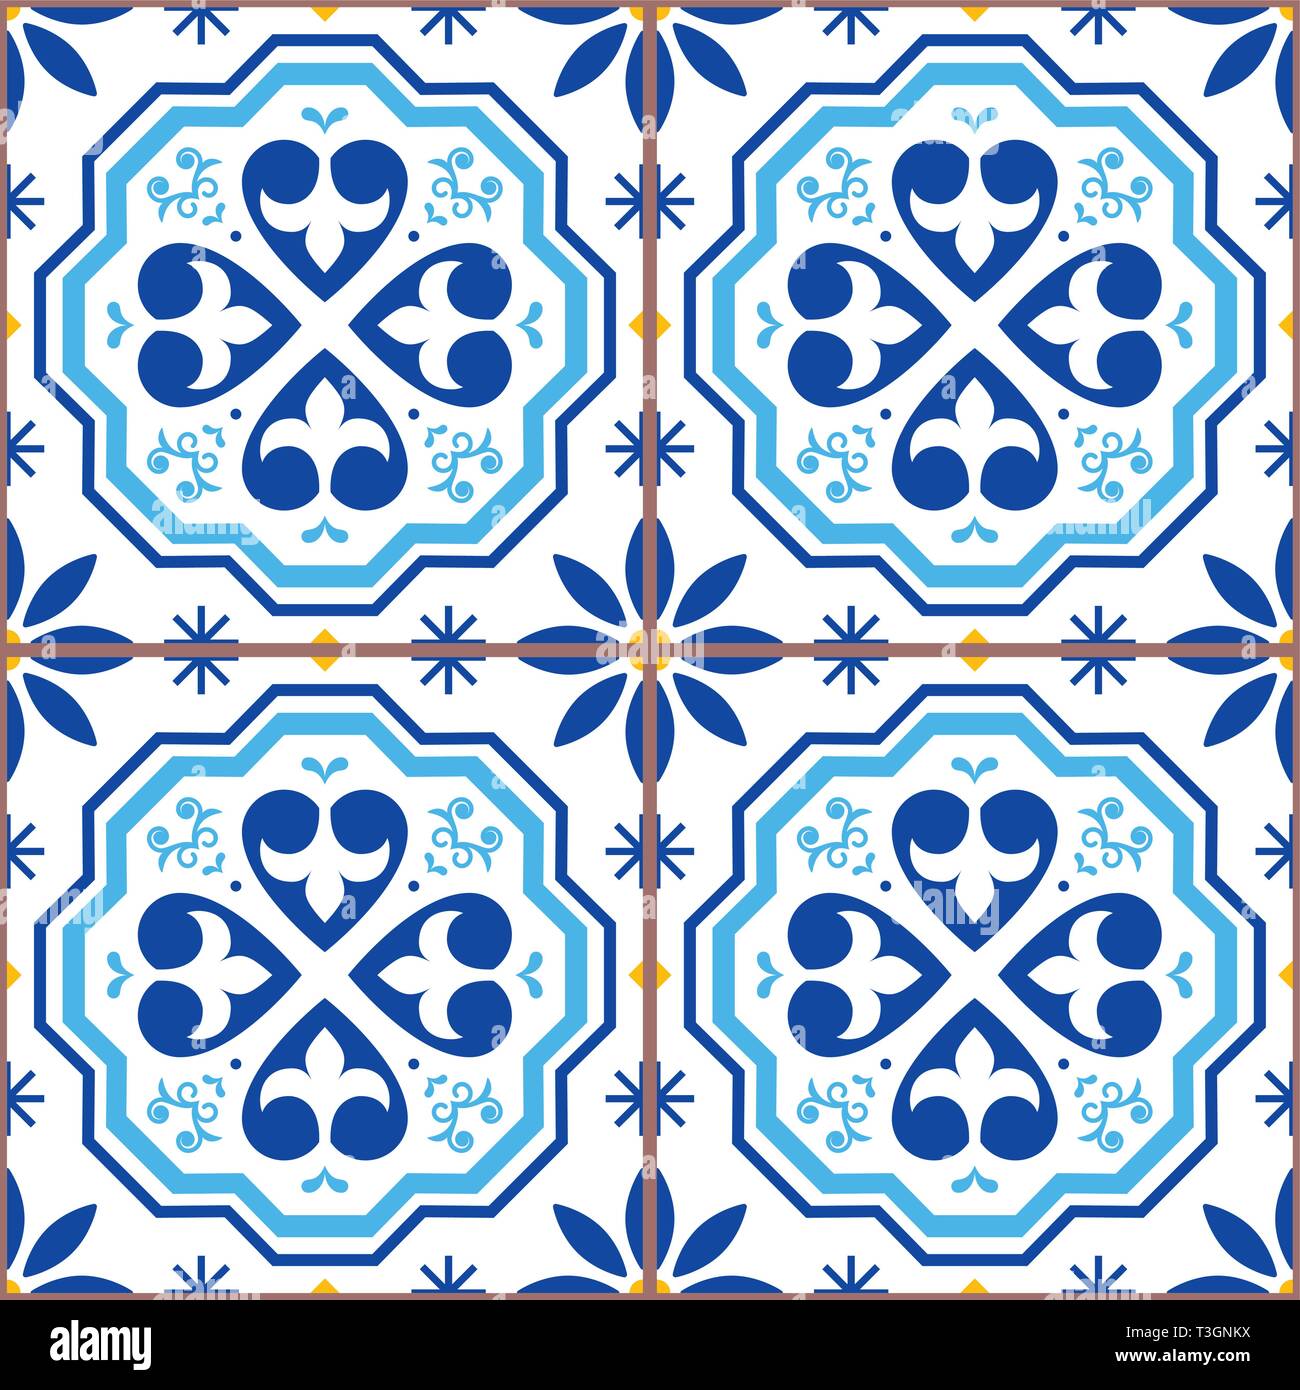 Carreaux azulejos portugais sans couture, modèle vecteur conception repetitve géométrique - textile ou papier peint fond Illustration de Vecteur